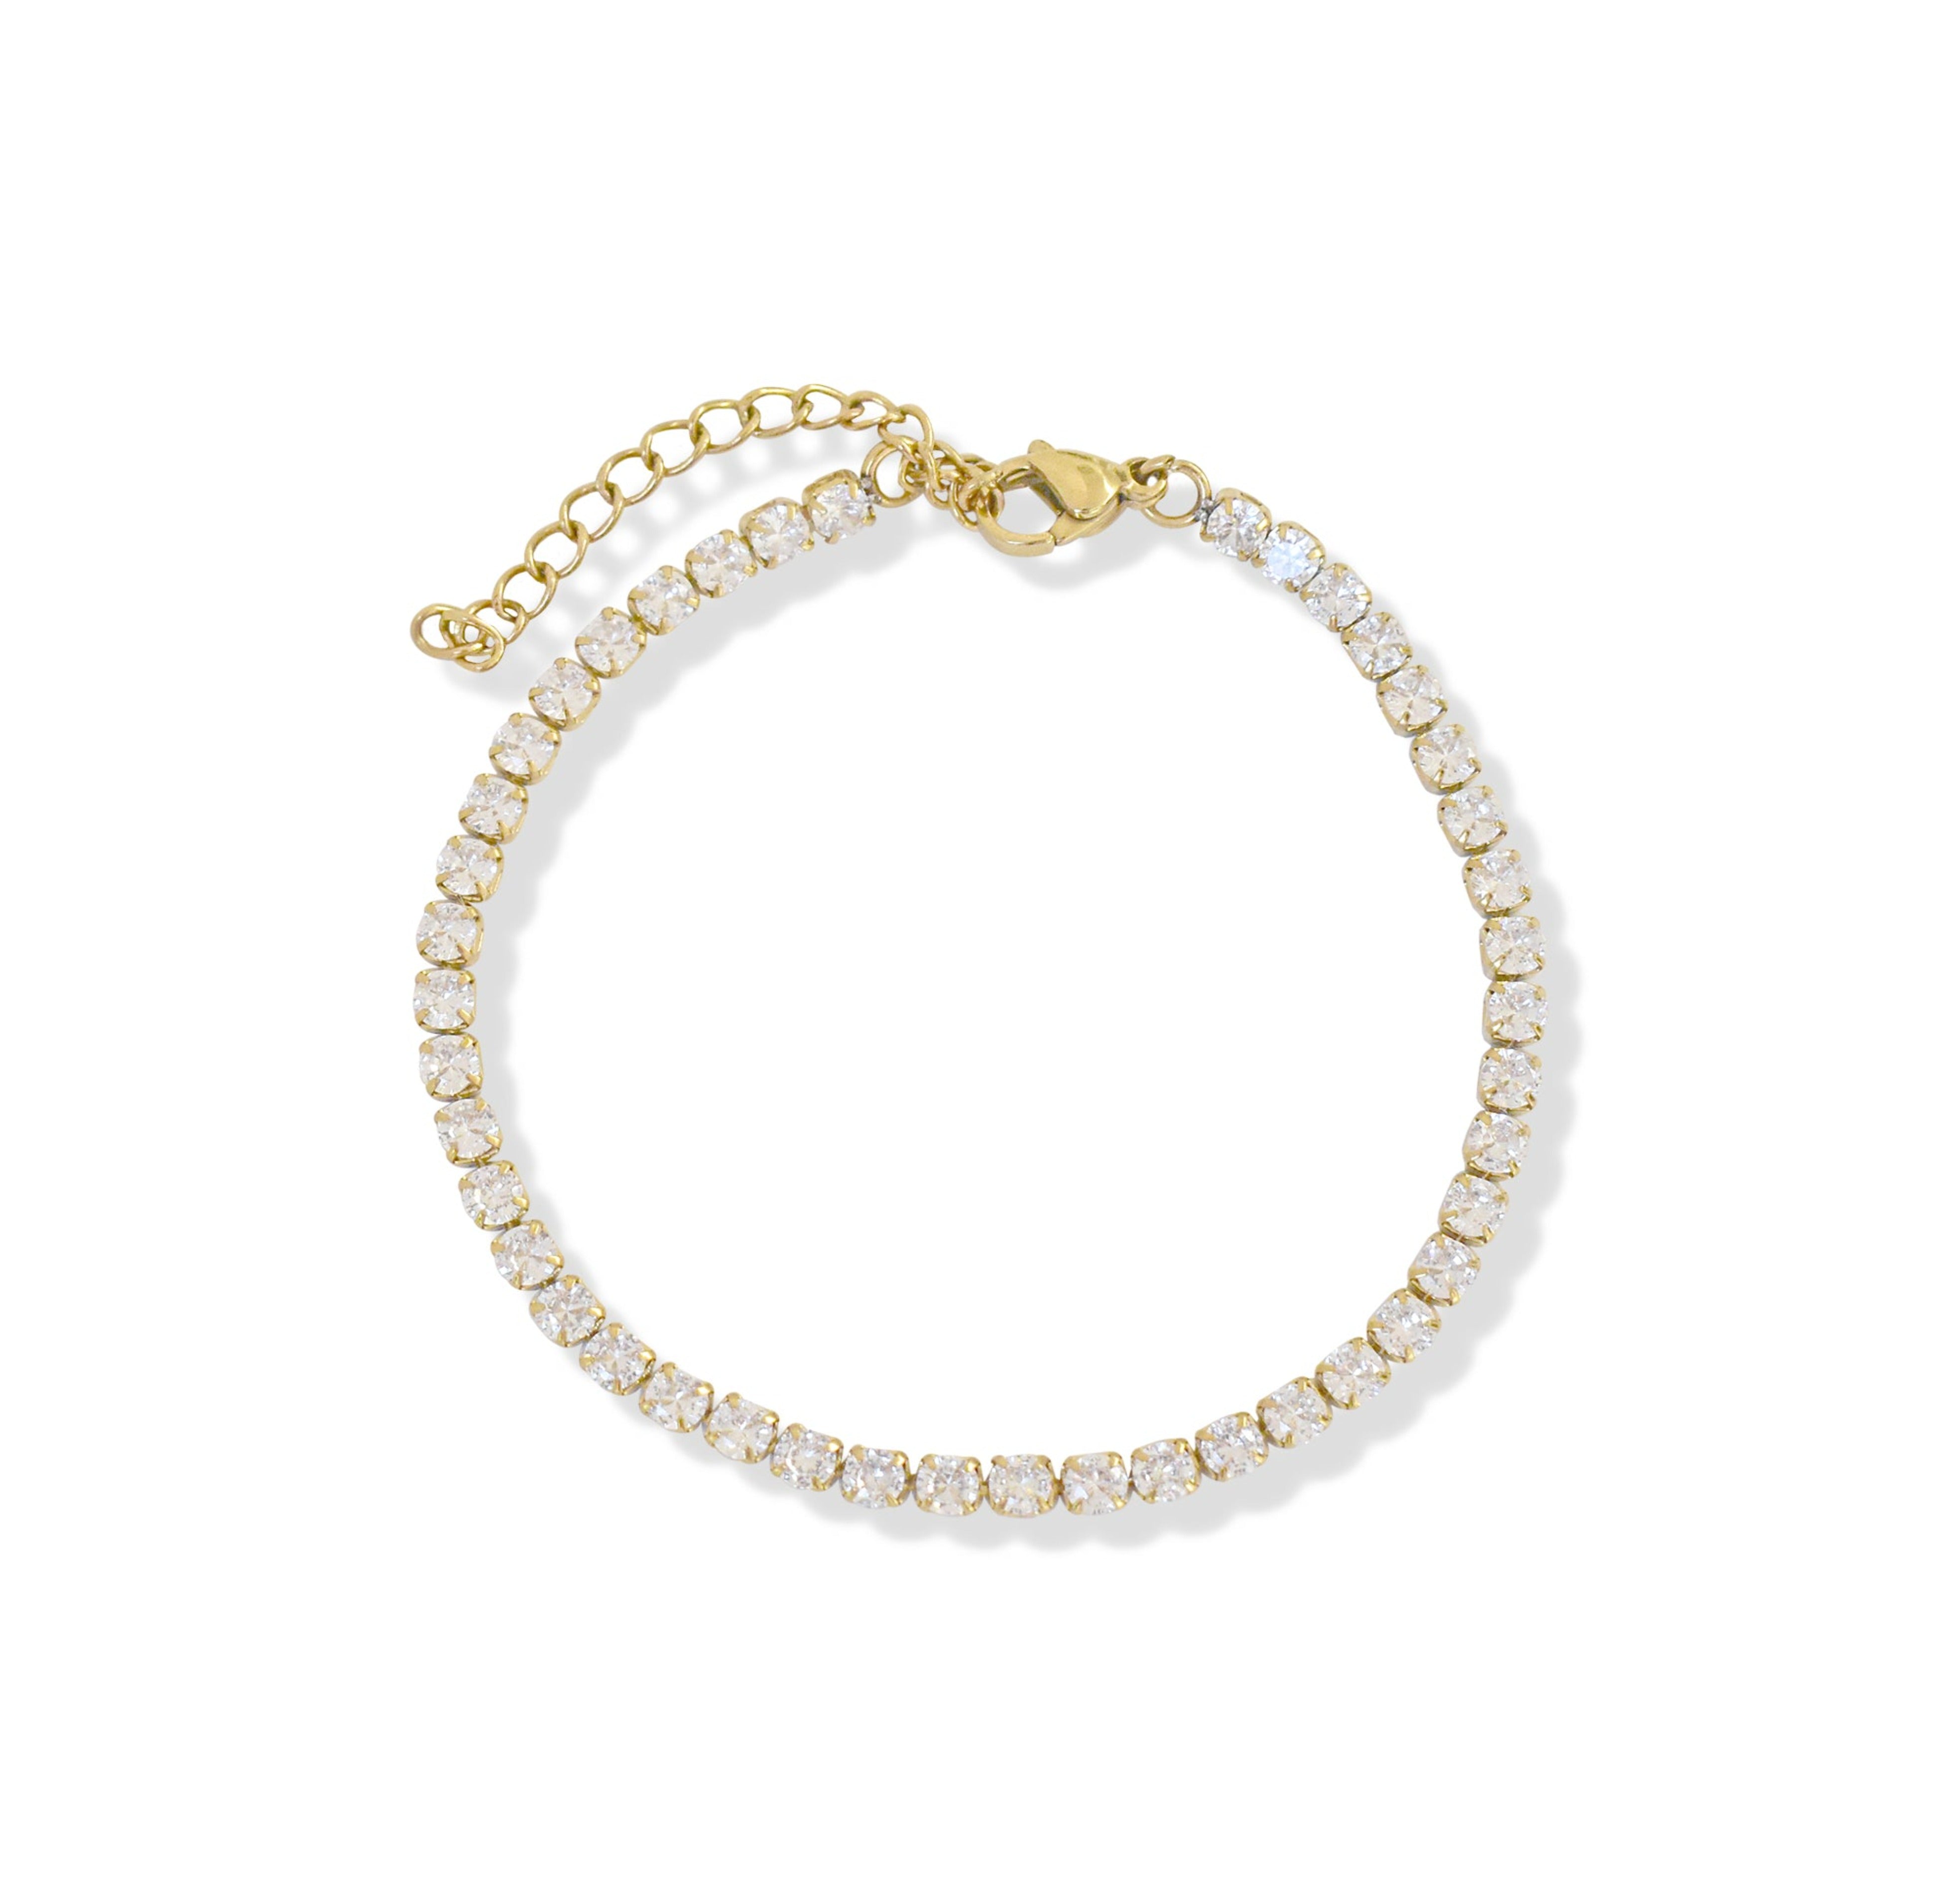 dainty gold tennis bracelet waterproof jewelry